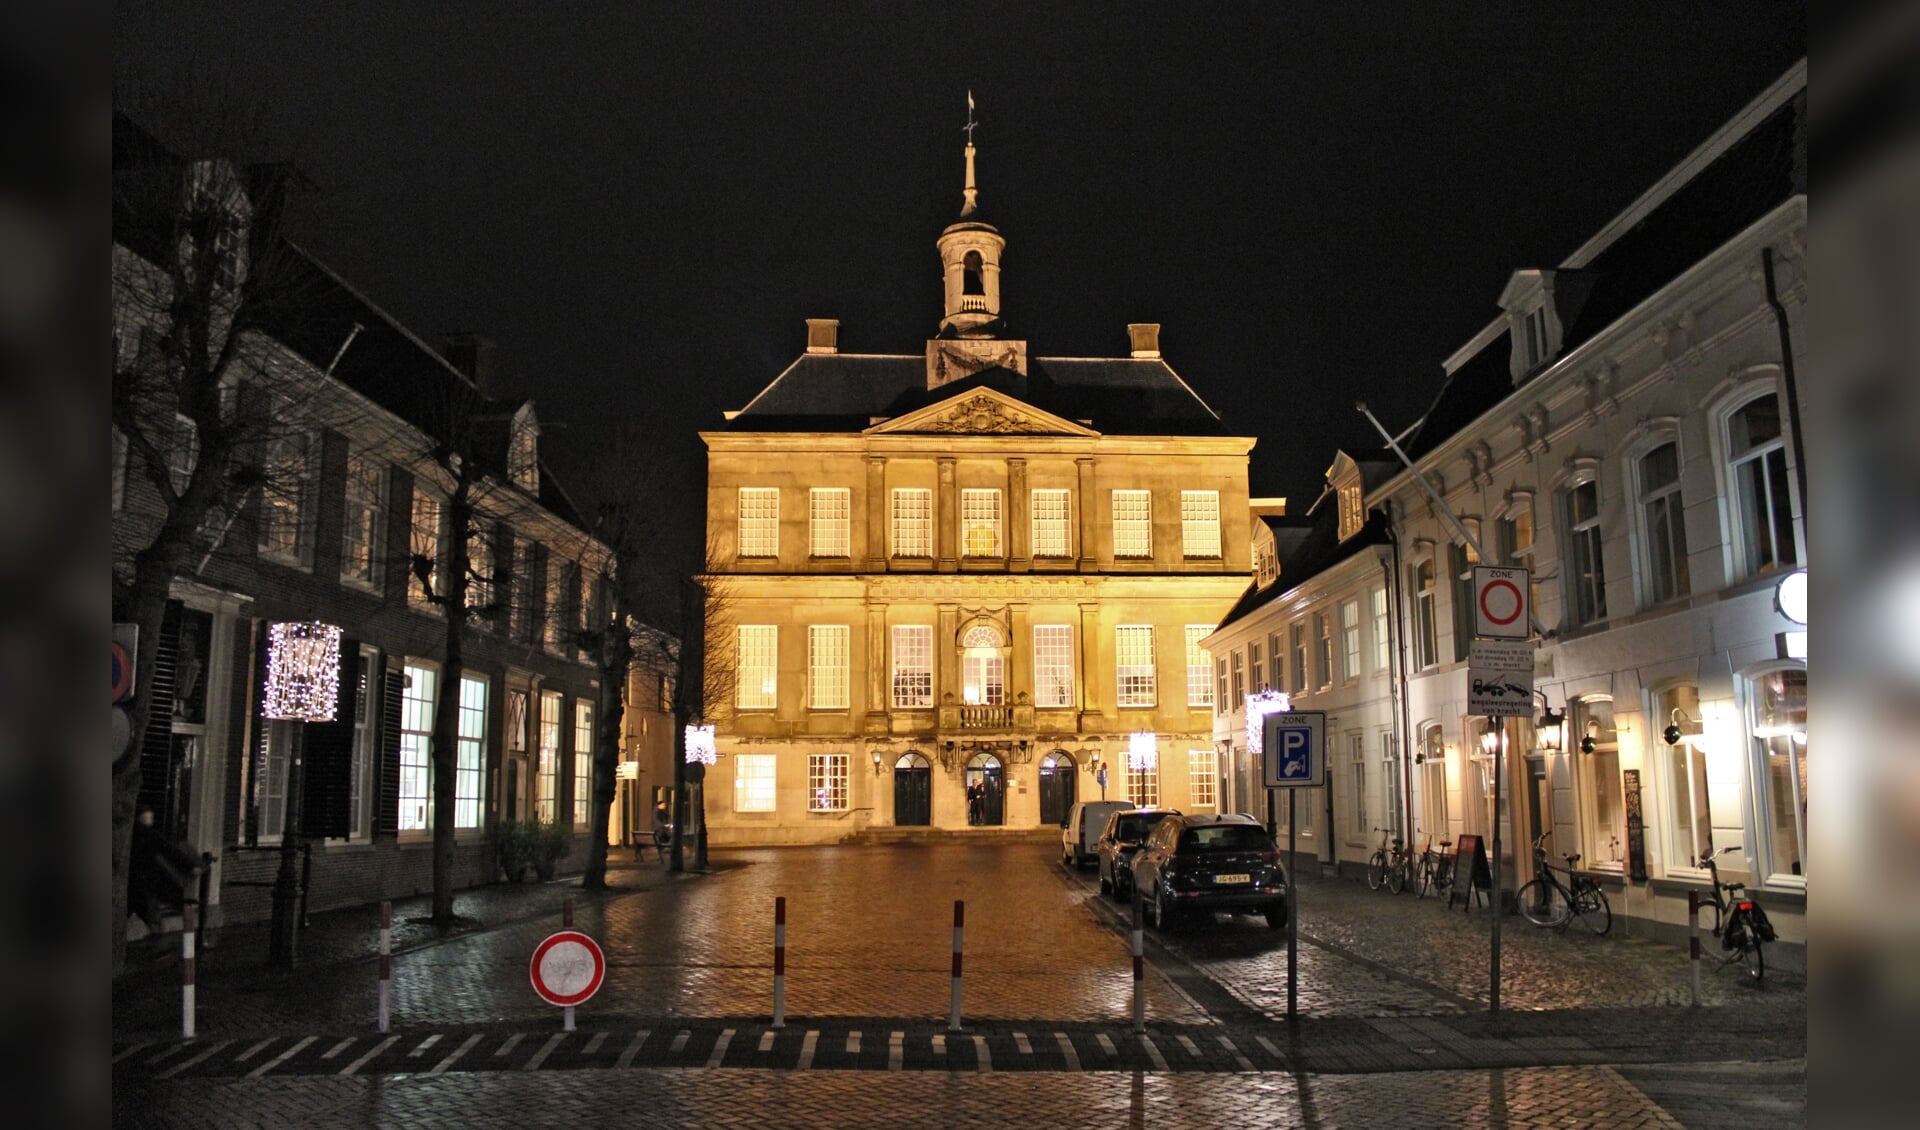 Het stadhuis hoort bij de nalatenschap van Weesp. Dit moet worden vastgelegd bij de bestuurlijke fusie.